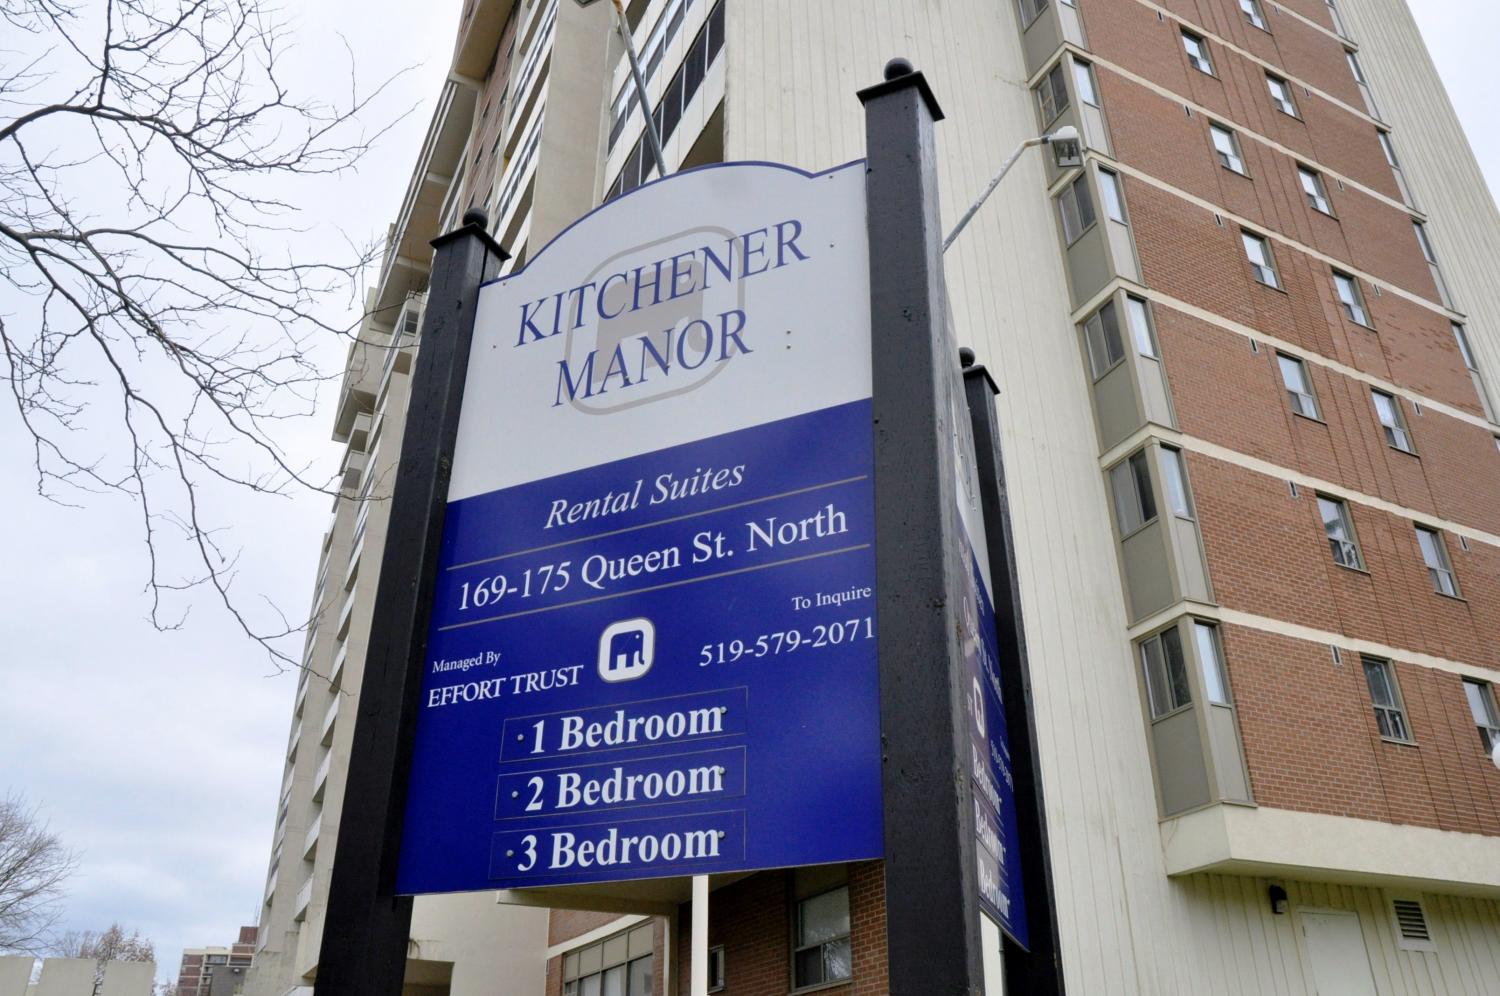 Kitchener Manaor Apartments 169 175 Queen St N Kitchener